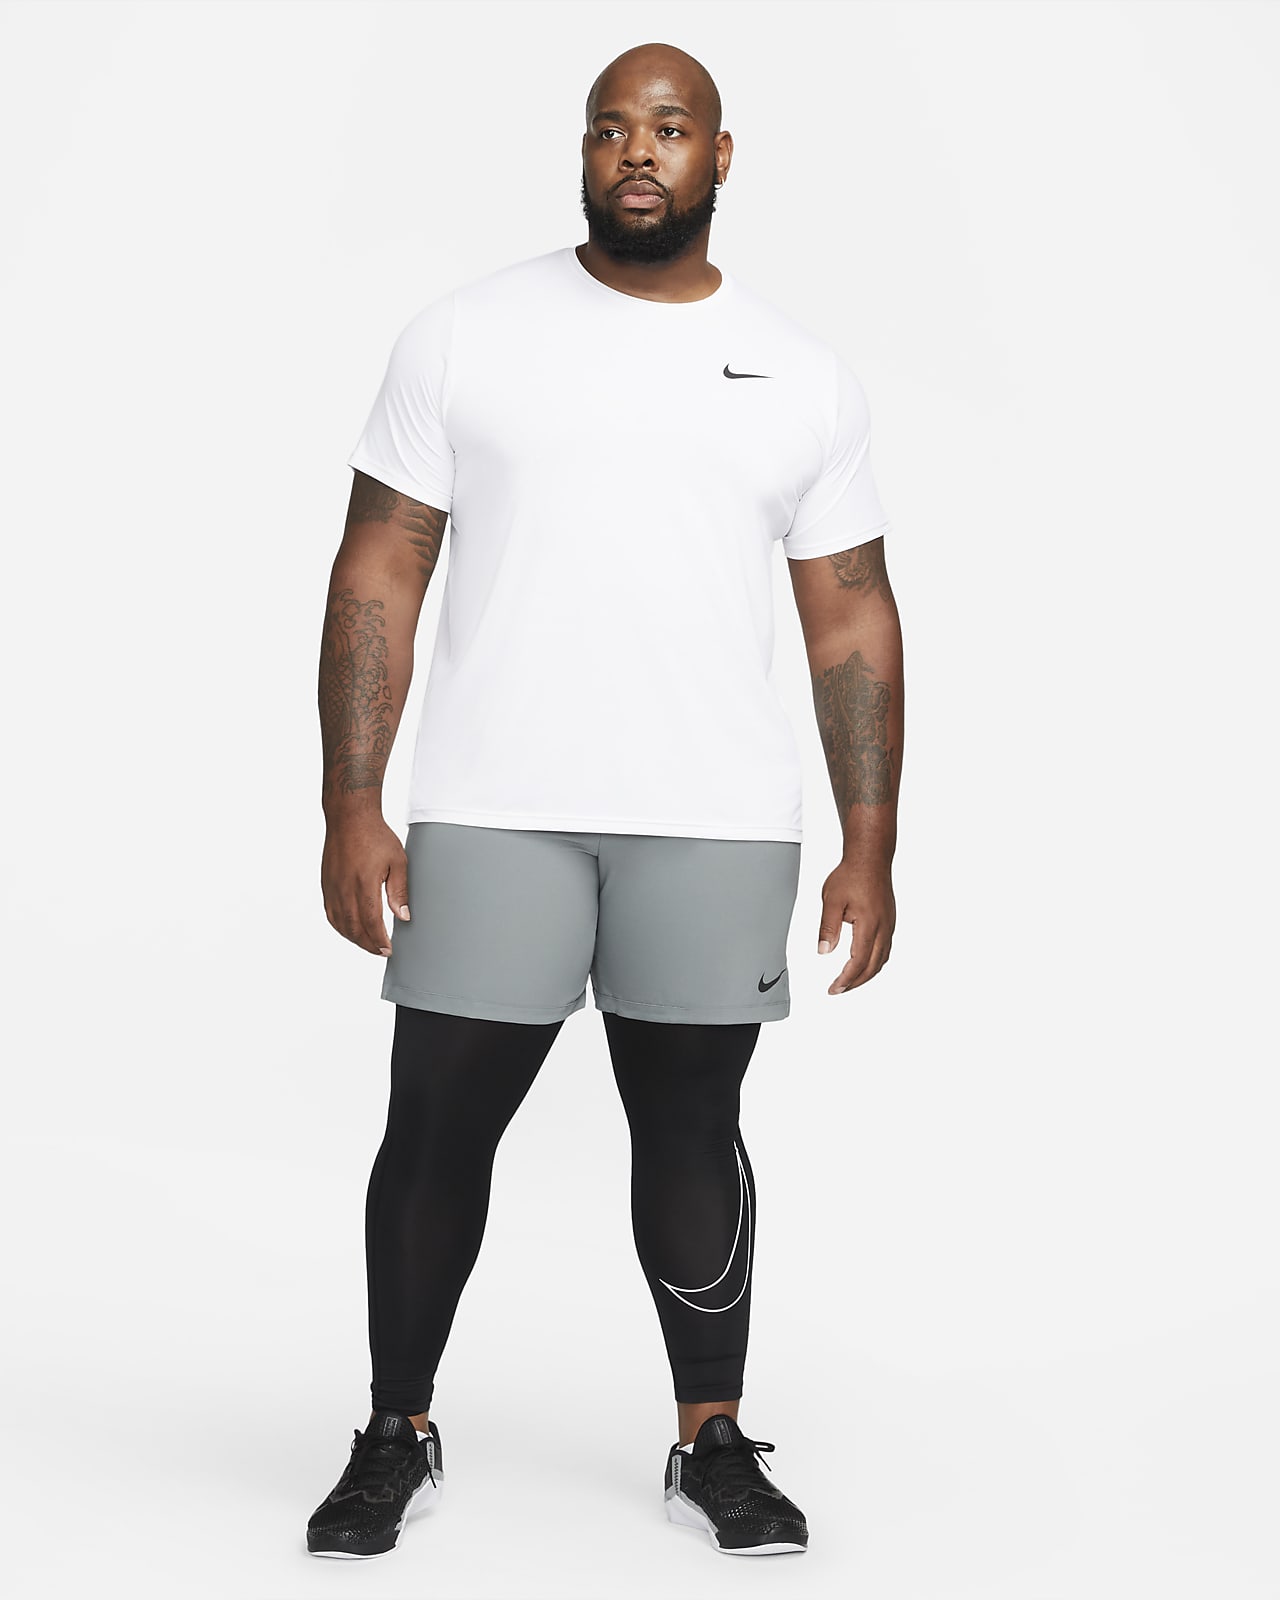 Nike Pro Dri Fit Compression Tights Camo Green DQ8363-386 Men's Size S Small  NEW